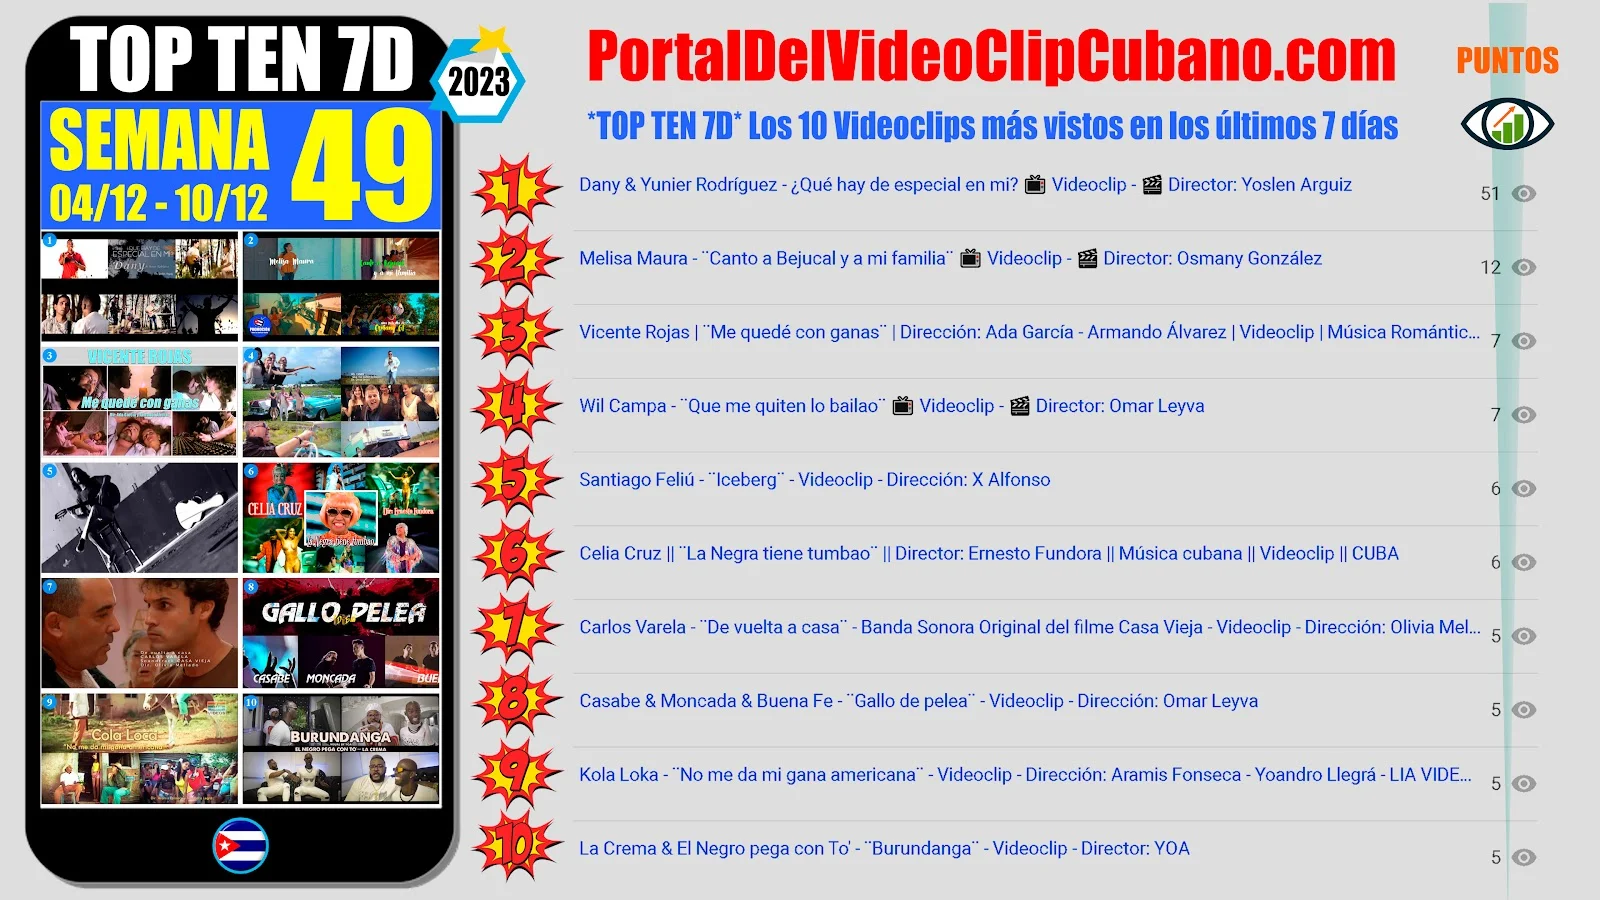 Artistas ganadores del * TOP TEN 7D * con los 10 Videoclips más vistos en la semana 49 (04/12 a 10/12 de 2023) en el Portal Del Vídeo Clip Cubano